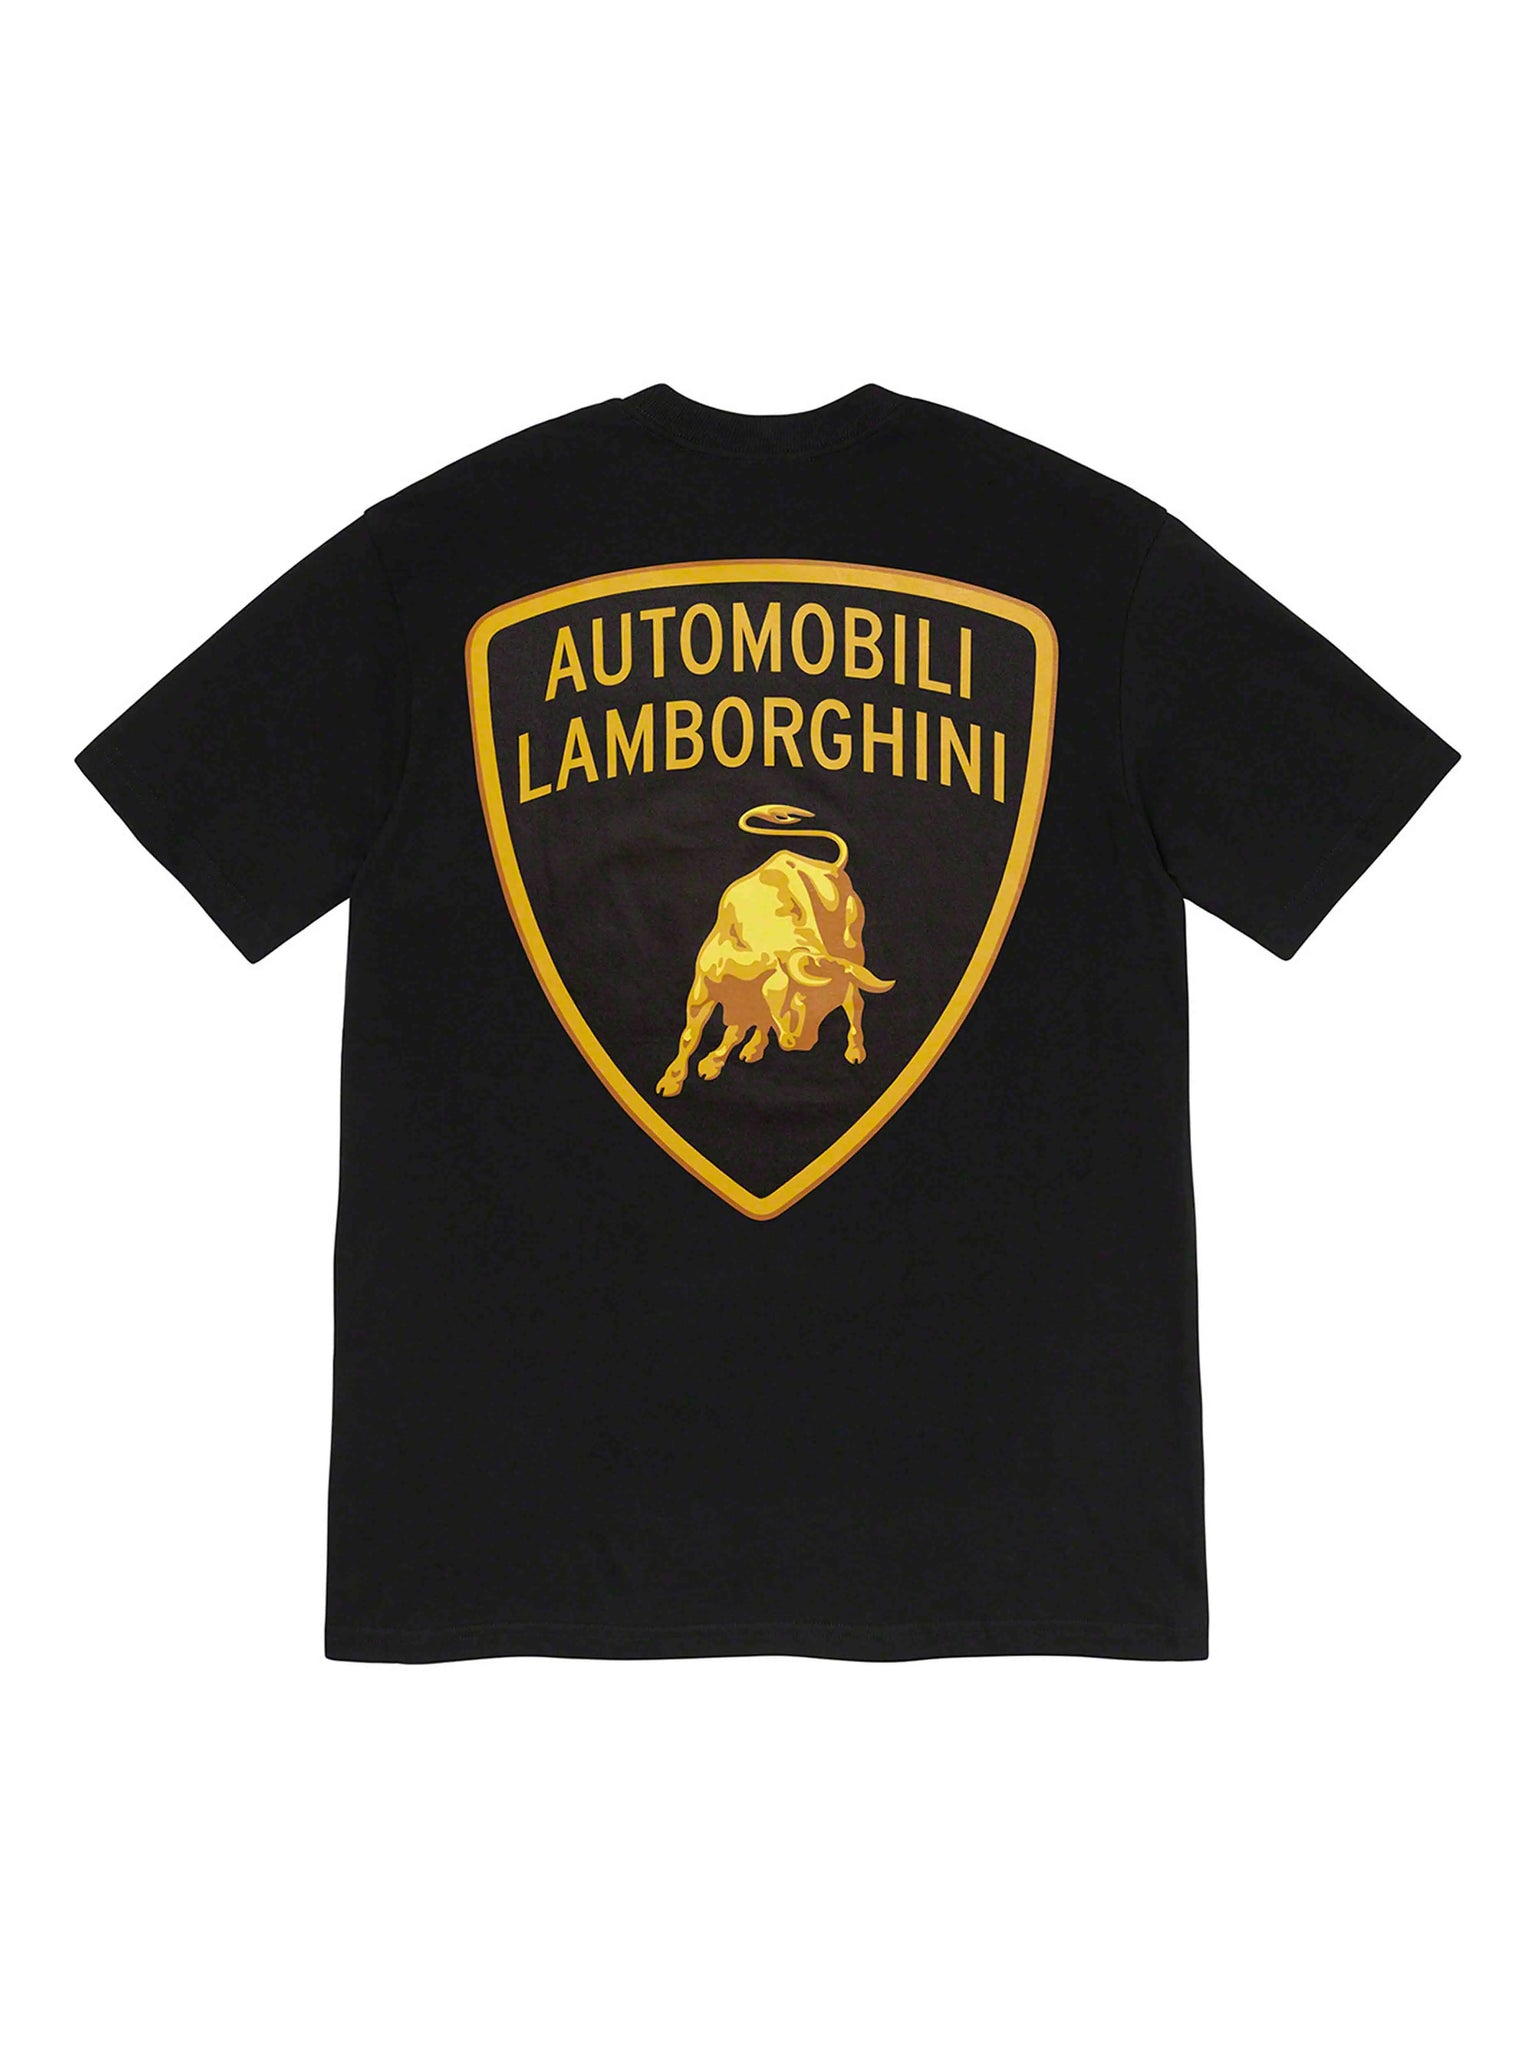 Supreme Automobili Lamborghini Tee Black [SS20] Prior